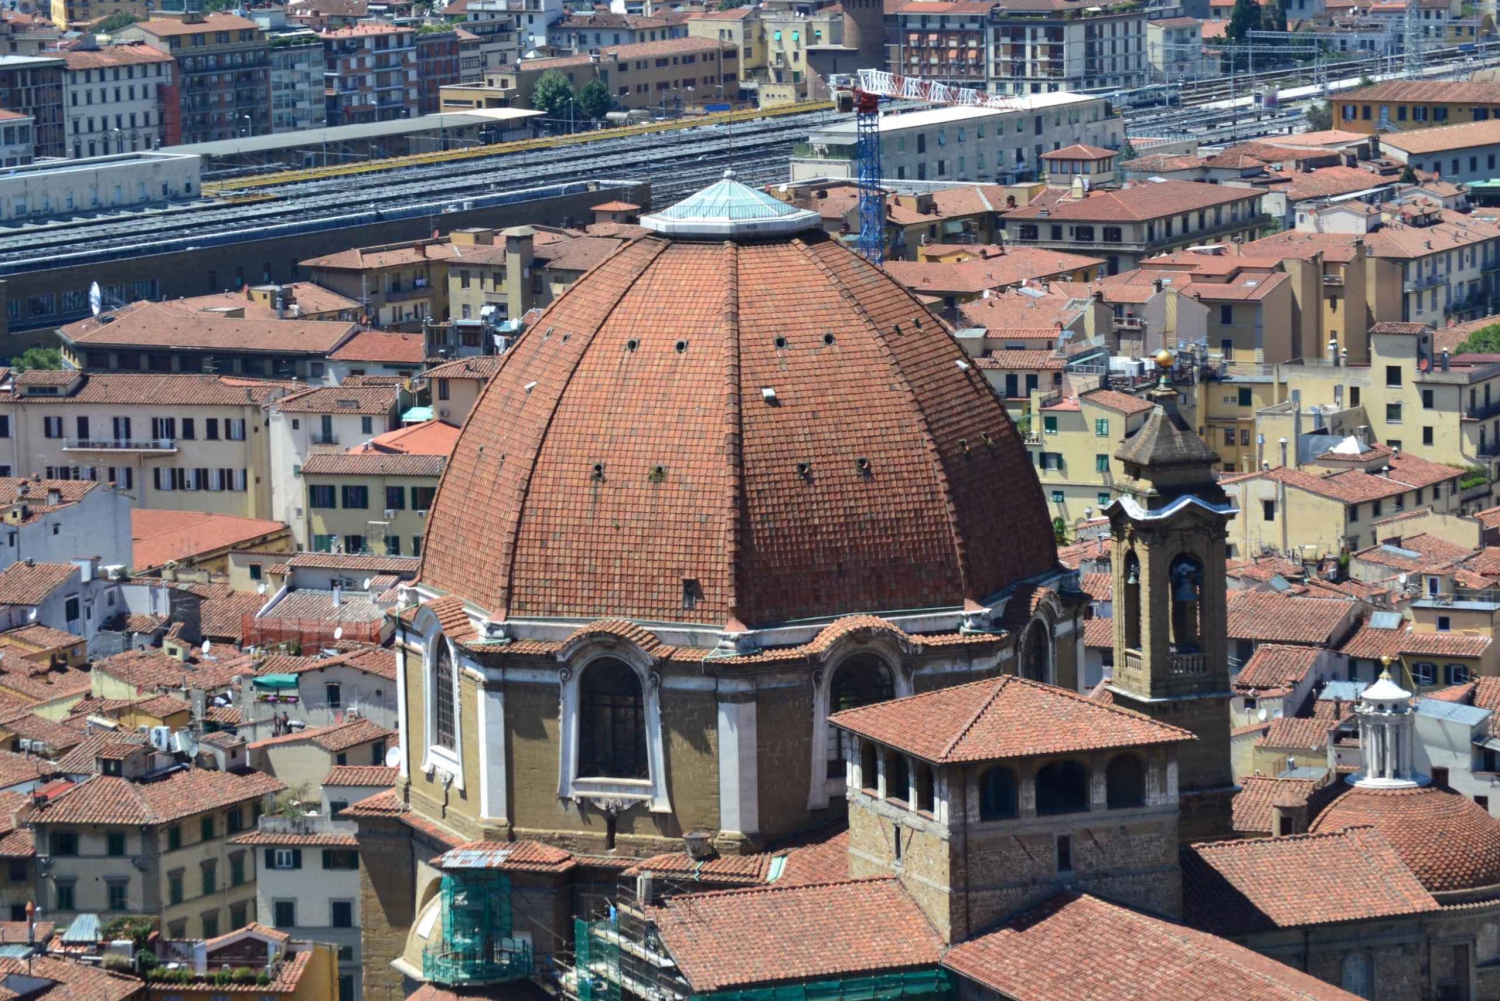 Visit-the-Medici-Chapels